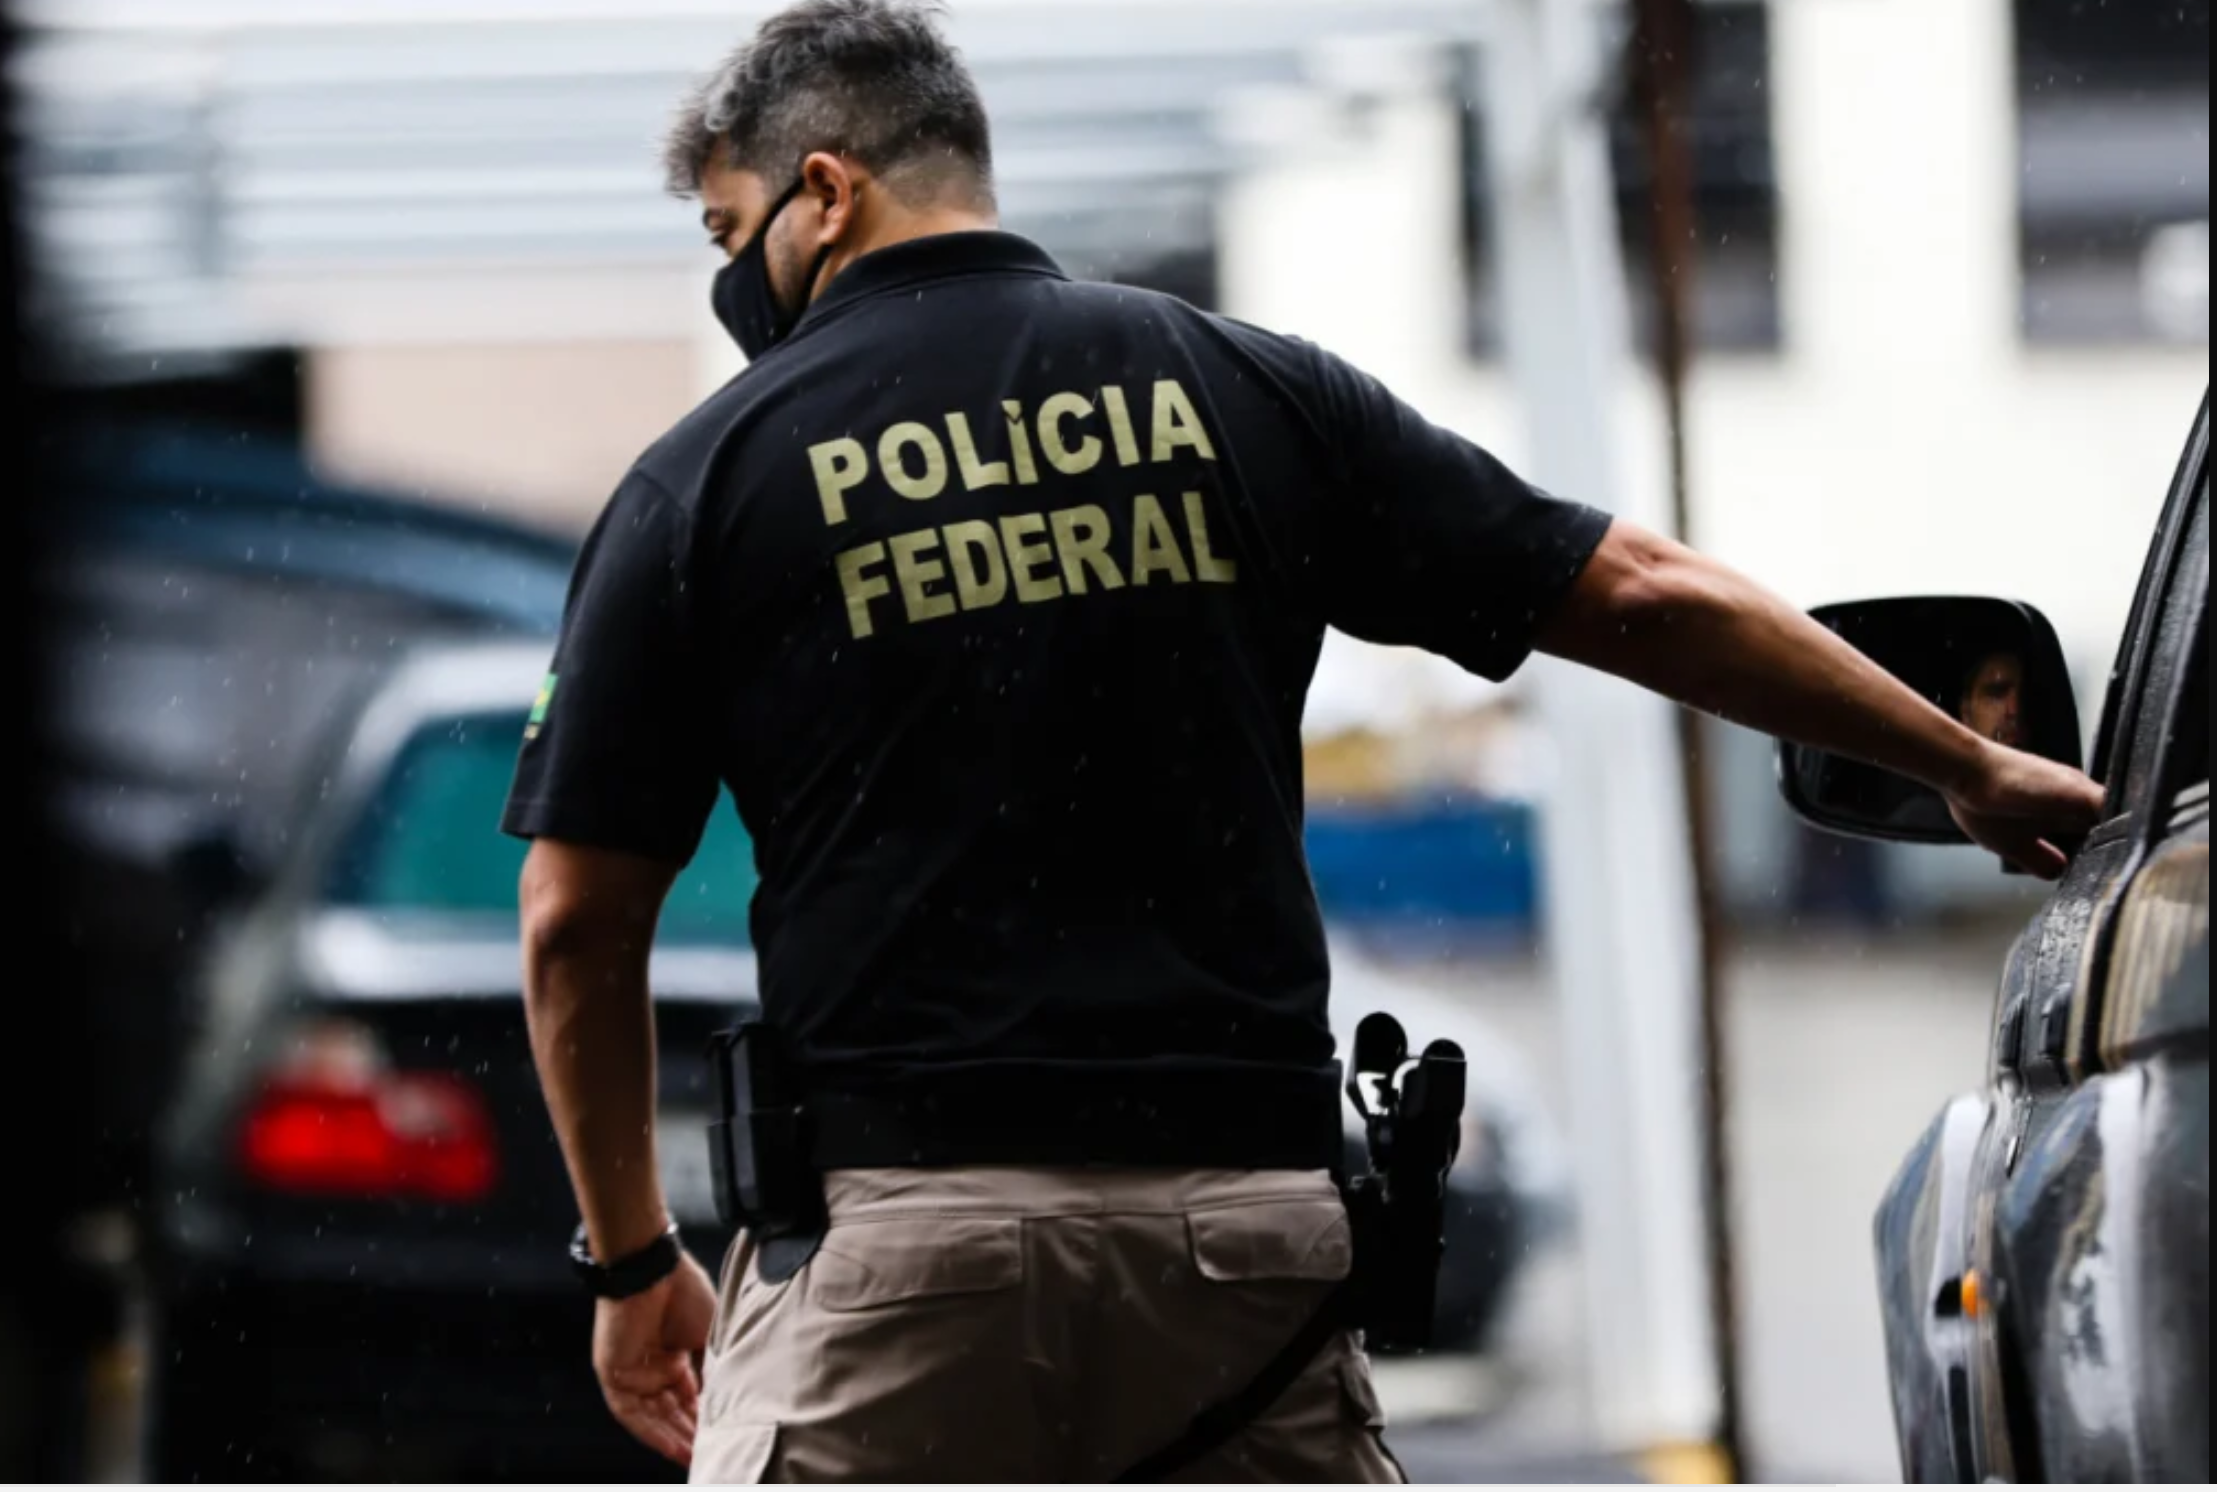 Policiais Federais repudiam “aumento” de Bolsonaro e denunciam quebra de compromisso